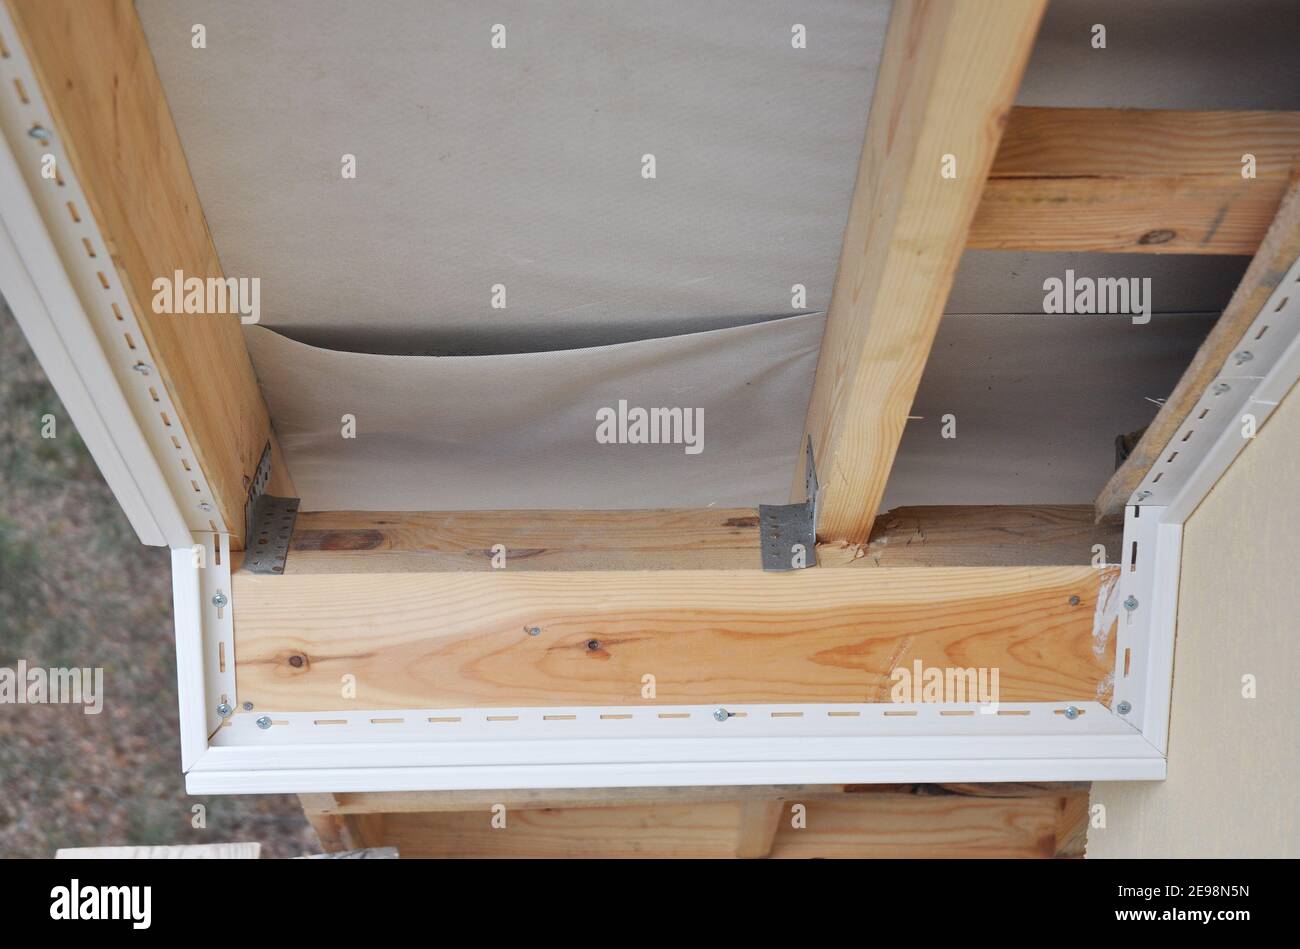 Installazione di soffiti, fascioni e grovaie. Installare Soffits. Riparazione di tetti, travetti a soffitto. Foto Stock